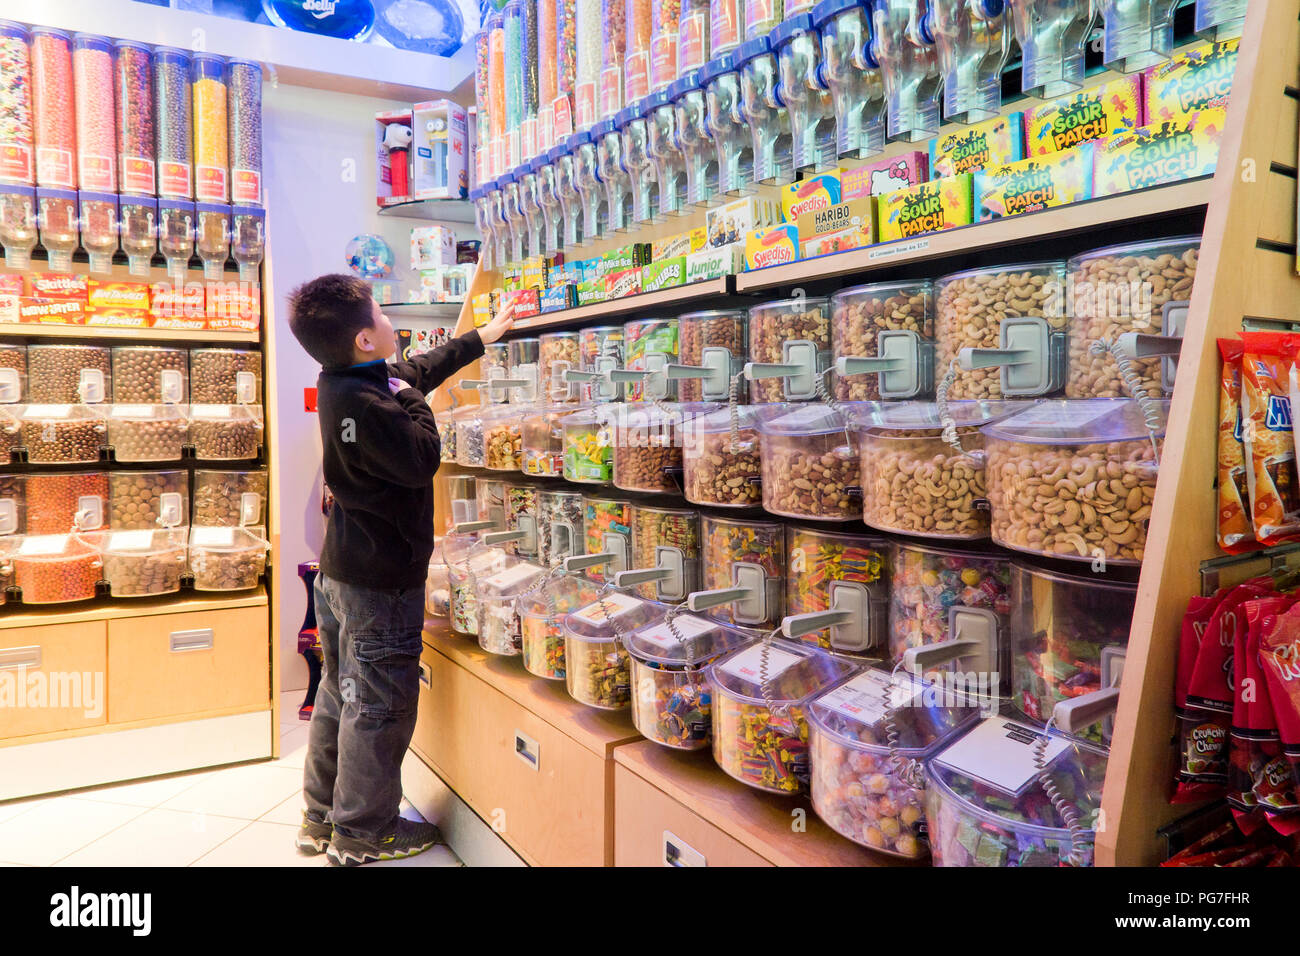 Bambino di età compresa tra i 8 e acquisto di jellybeans presso un negozio di caramelle (sweet shop) - USA Foto Stock